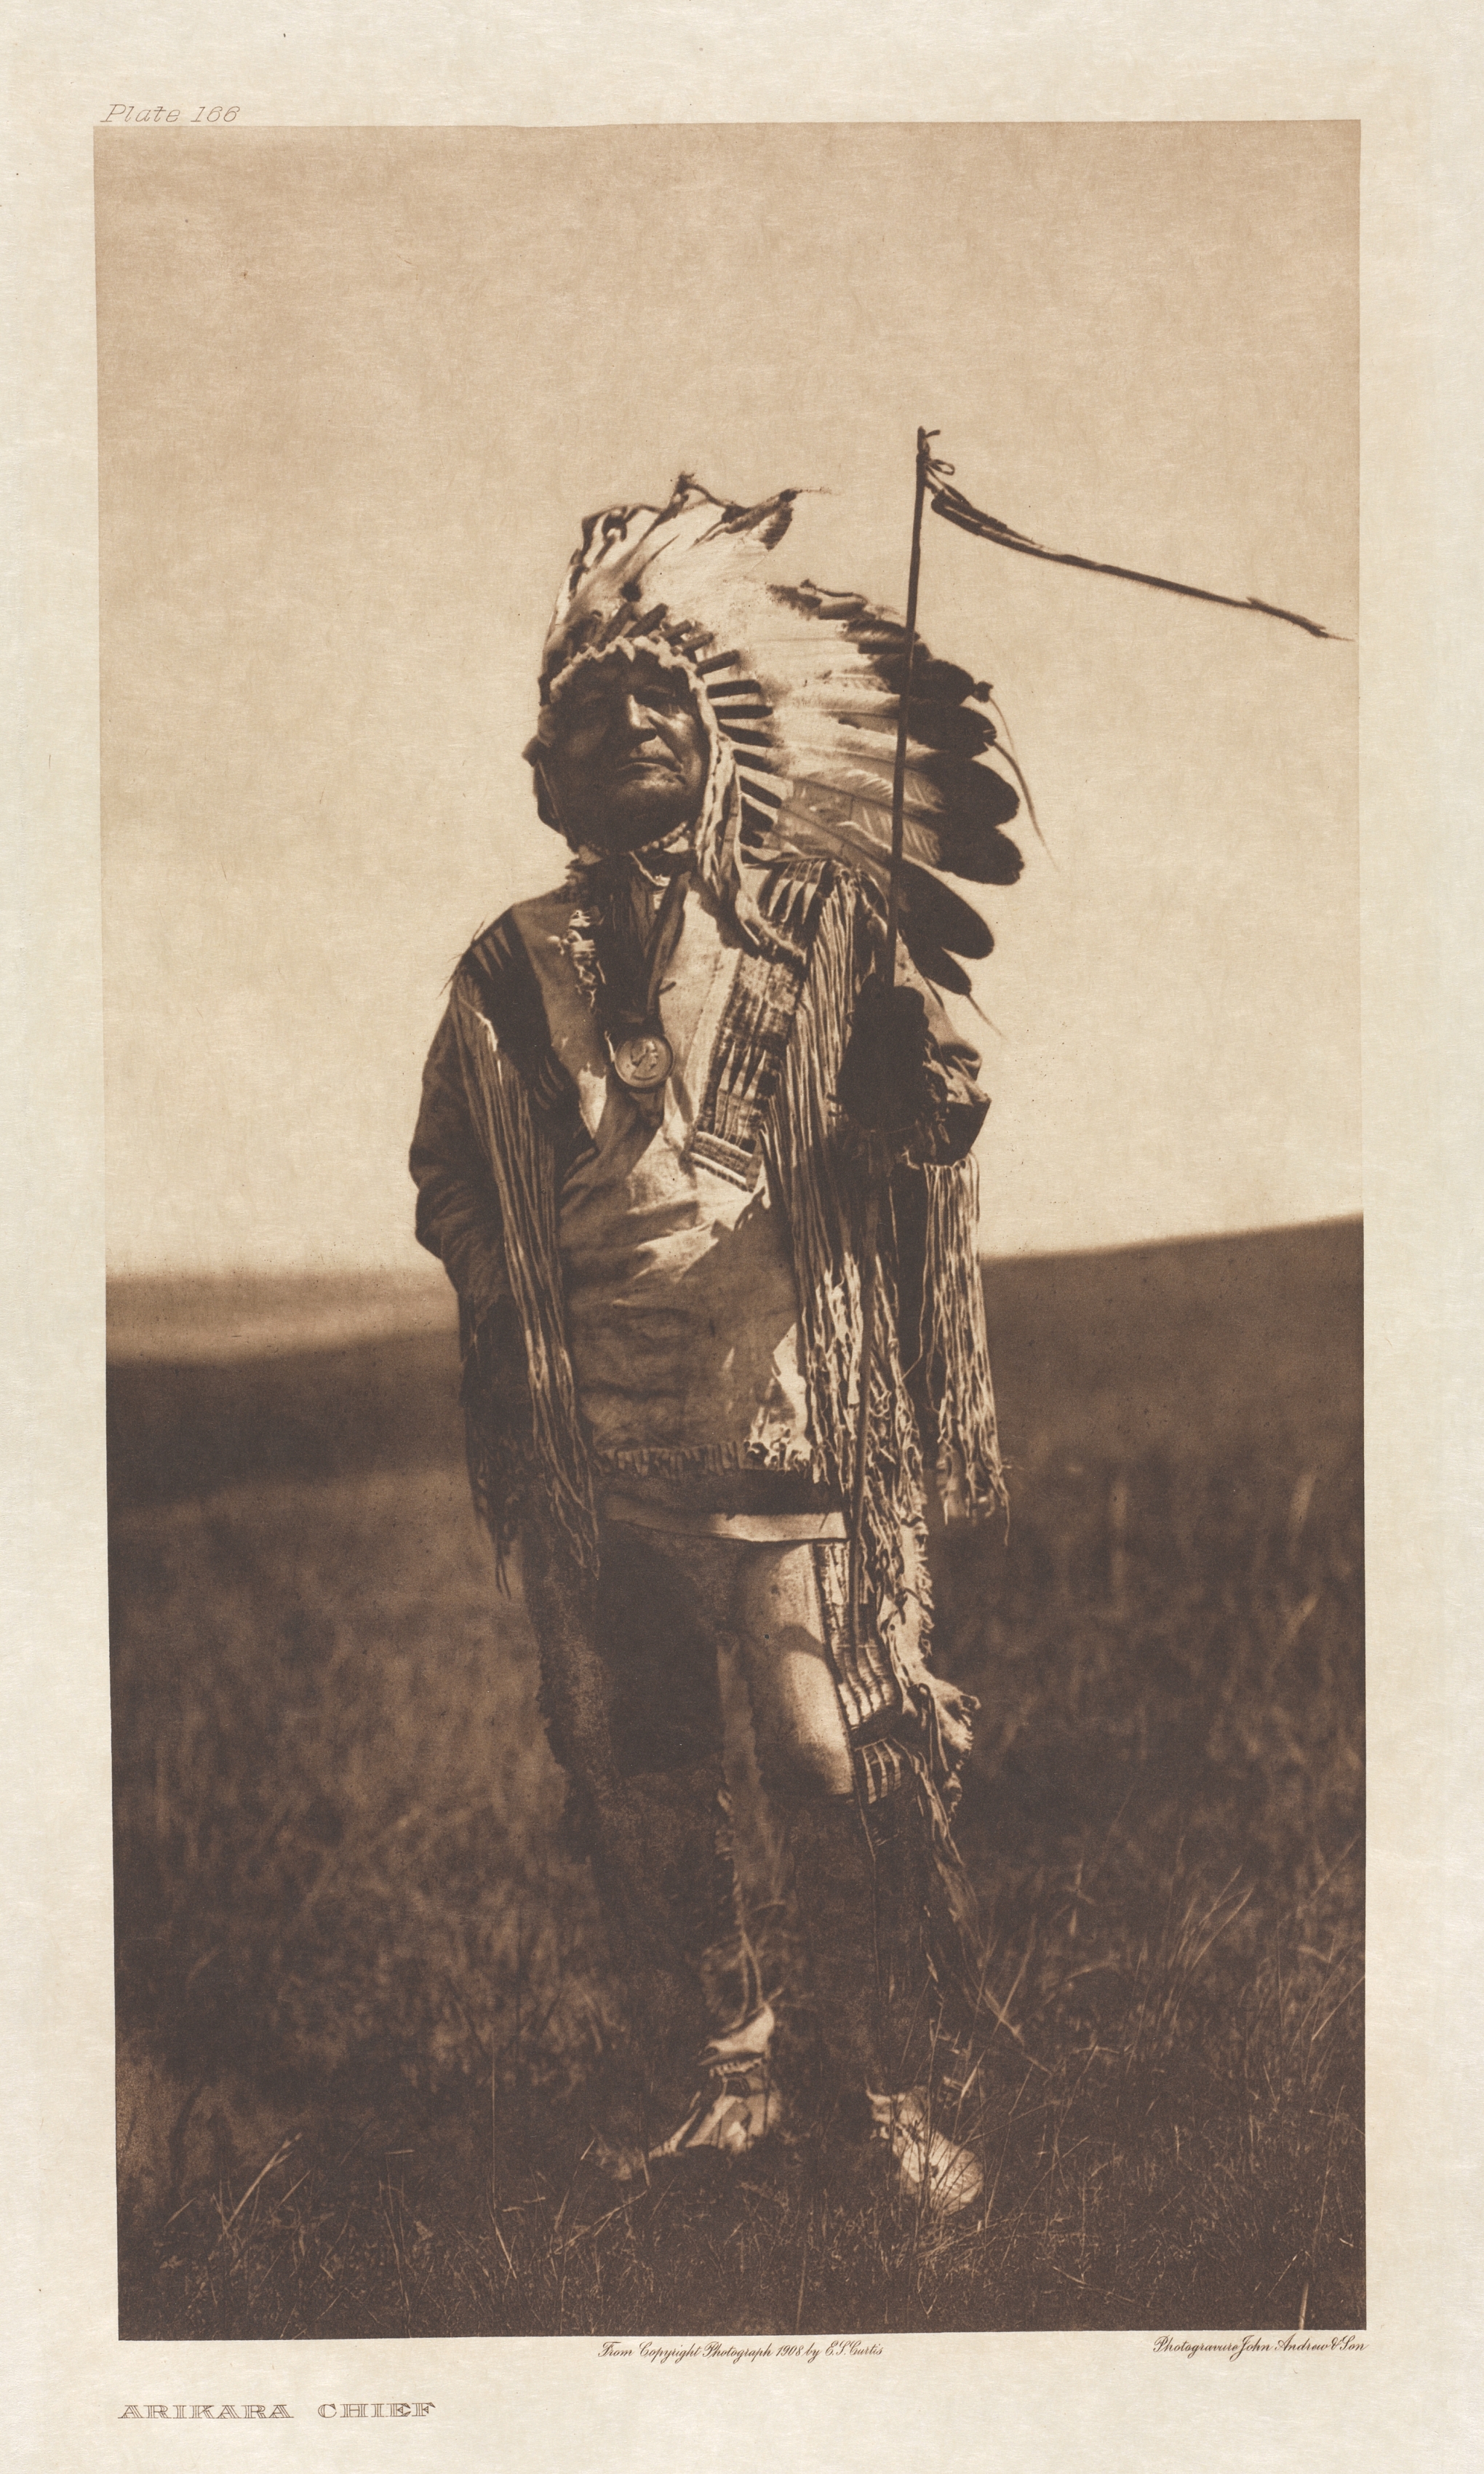 Portfolio V, Plate 166: Arikara Chief